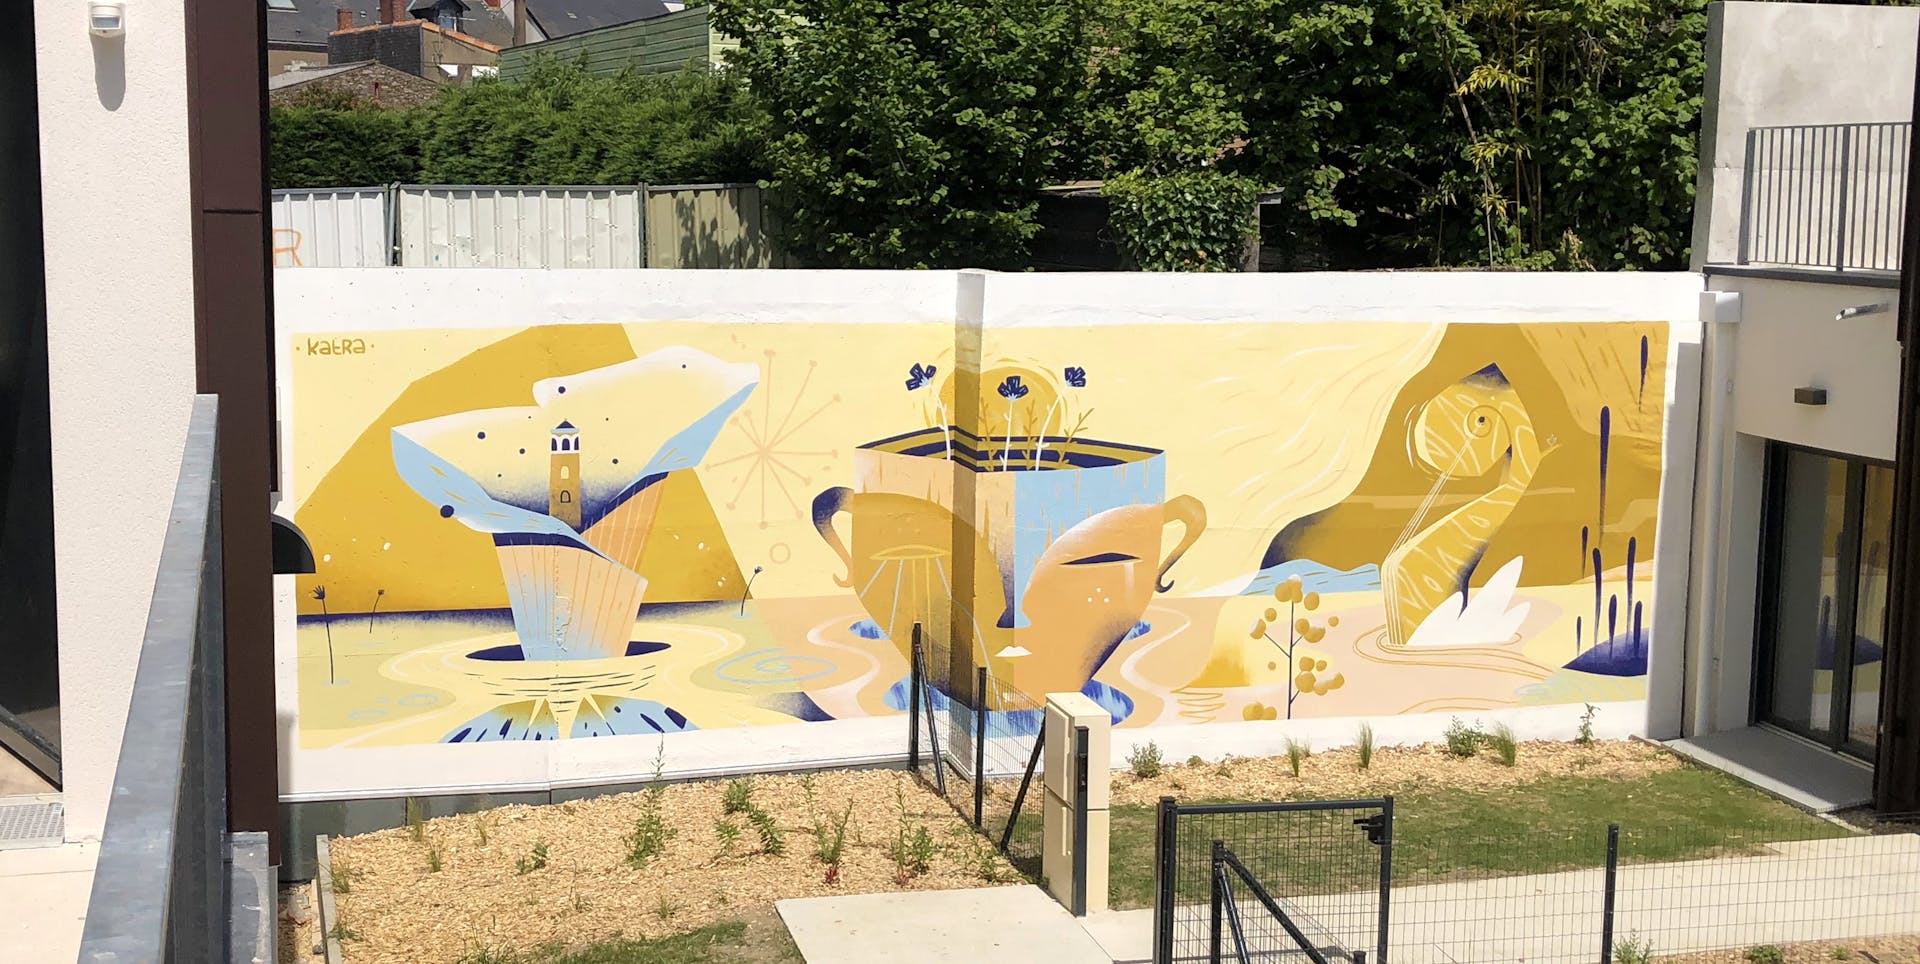 Fresque murale extérieure réalisée par le Studio Katra dans la cour de la résidence "Les 5 continents", missionnée par Vinci Immobilier.